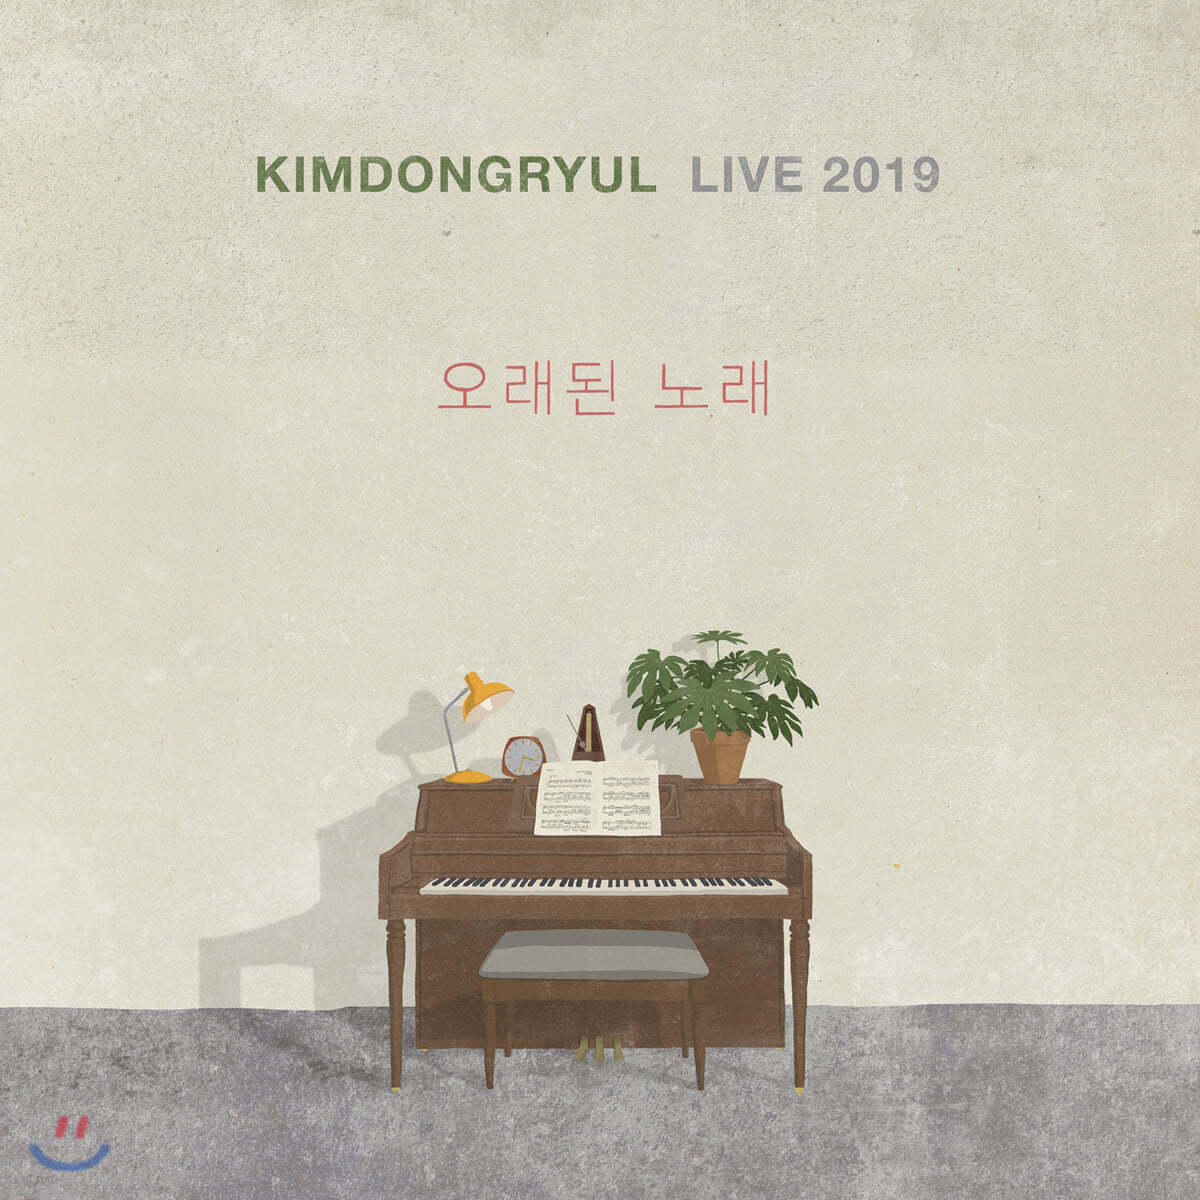 김동률 - 라이브 앨범: KIMDONGRYUL LIVE 2019 오래된 노래 [2LP]